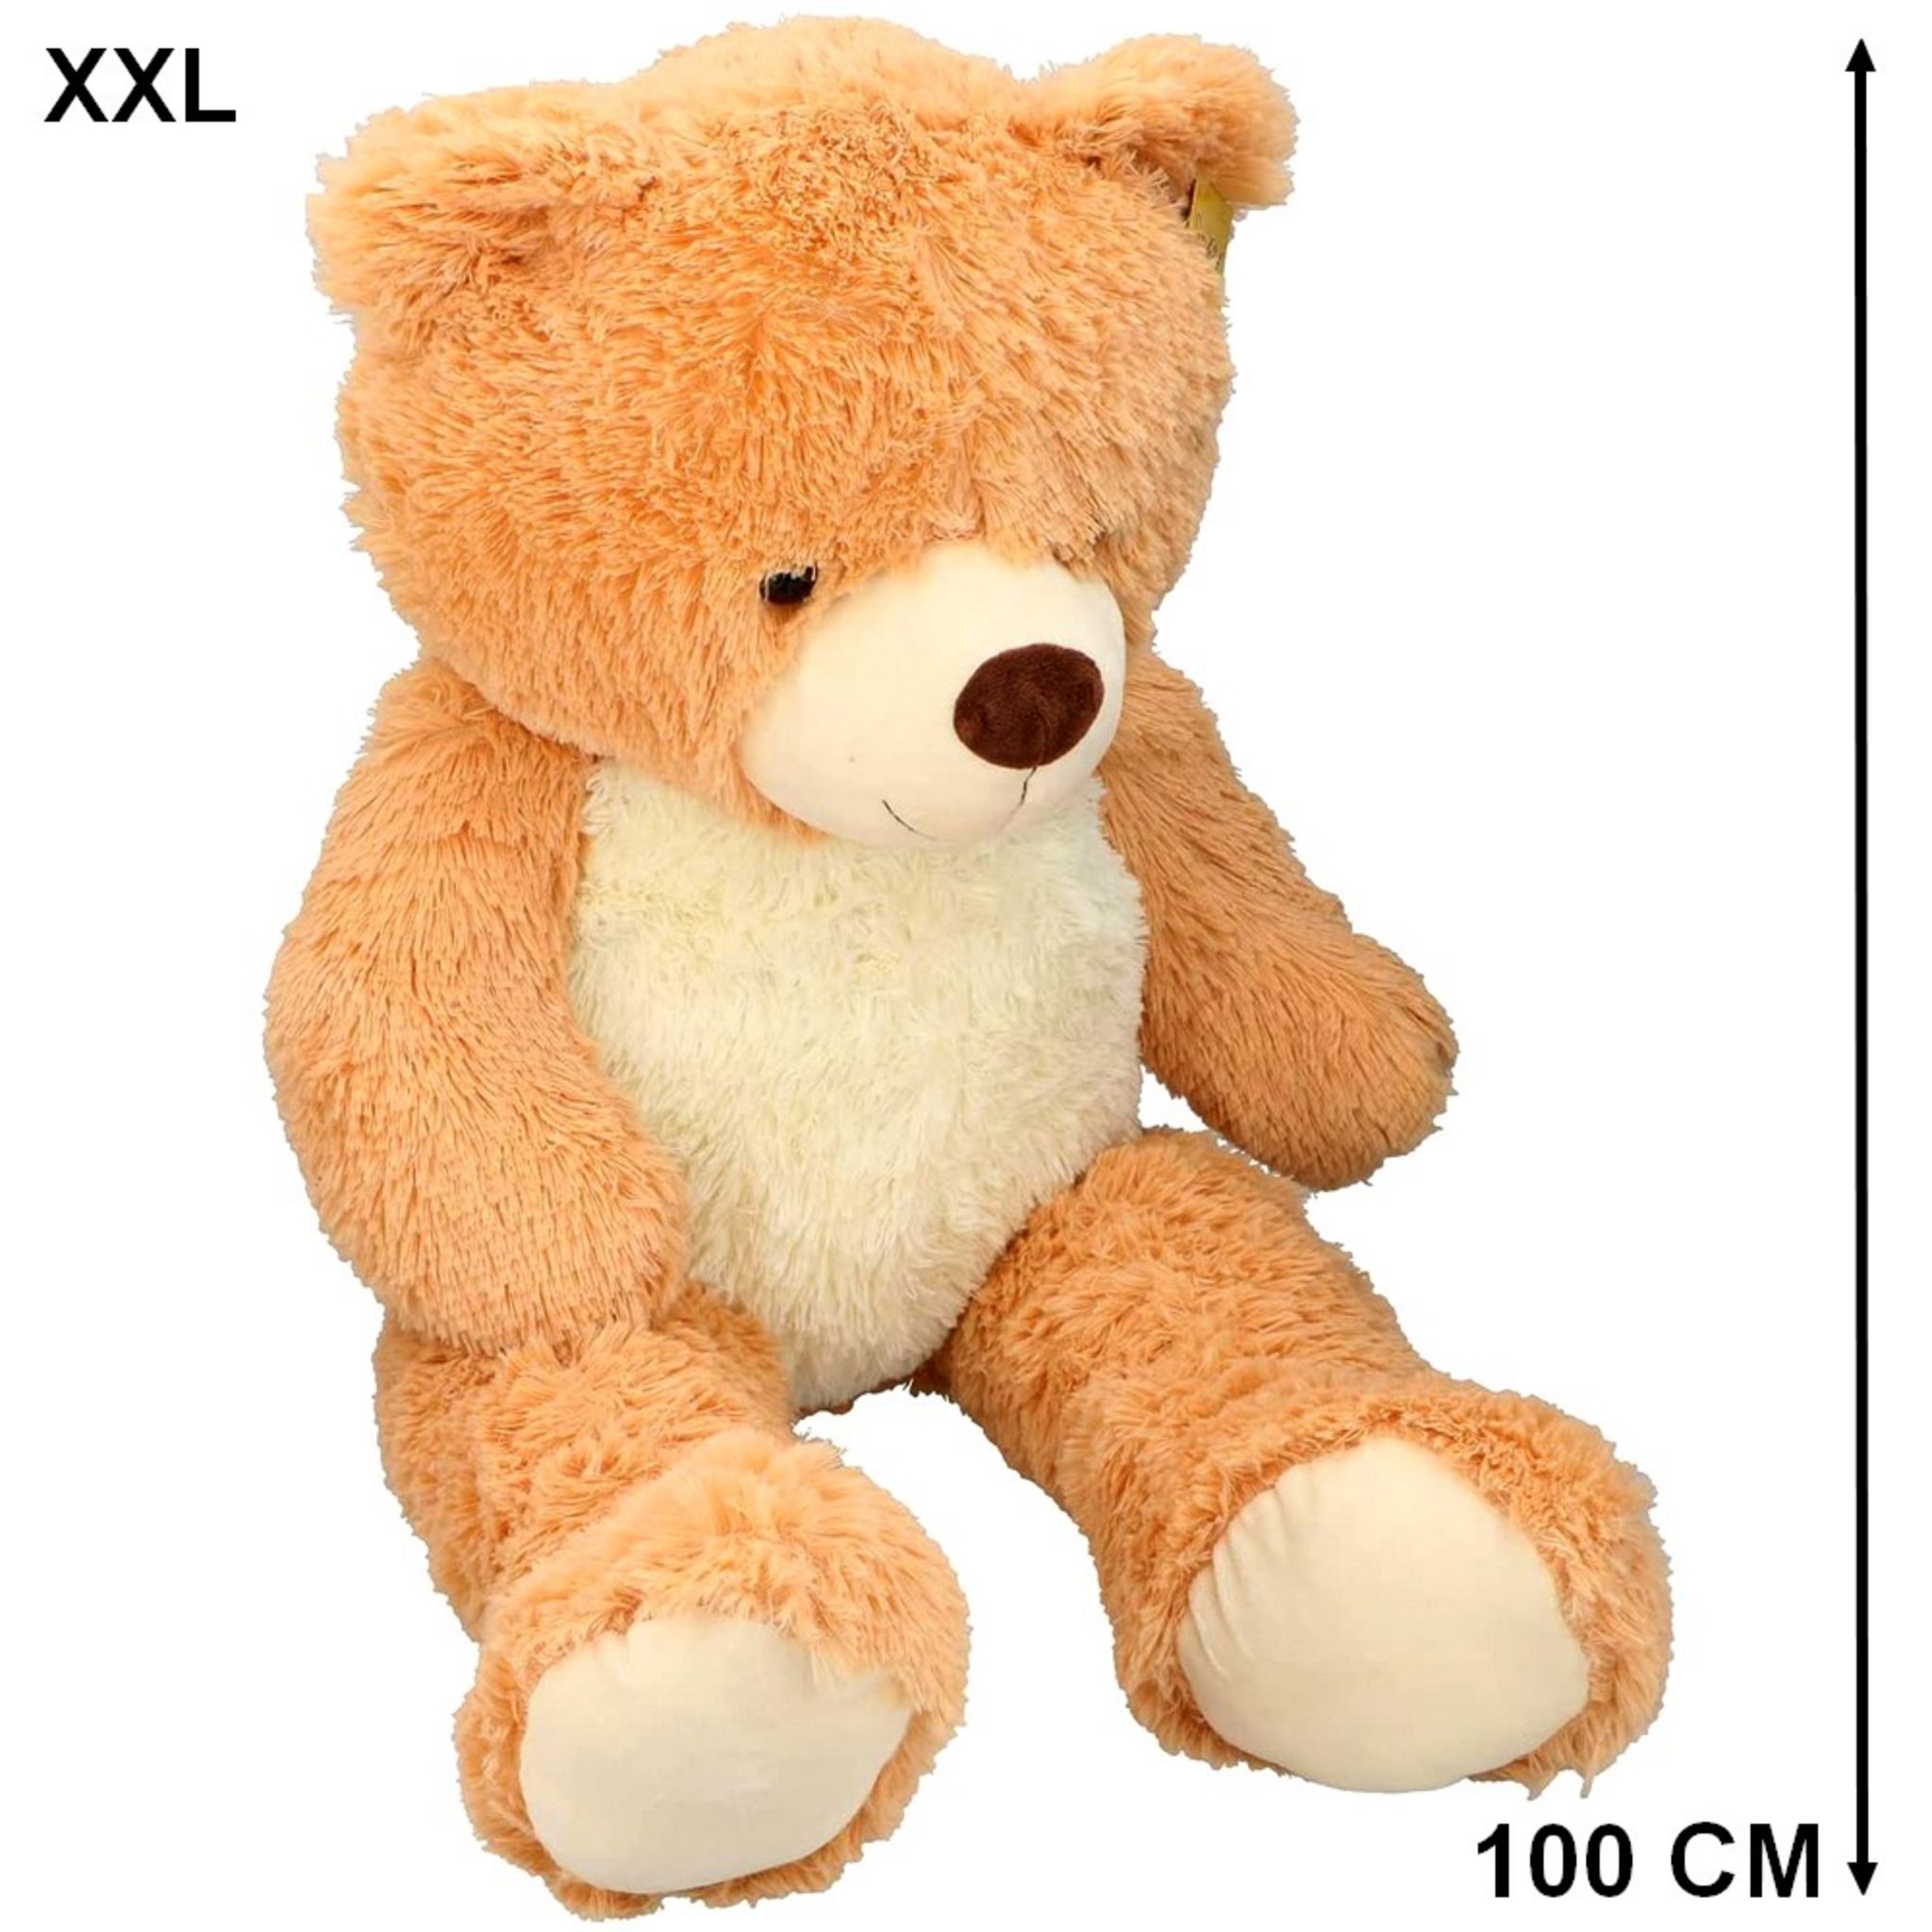 Grand ours en peluche géant personnalisé en peluche sur 1,5 m, le